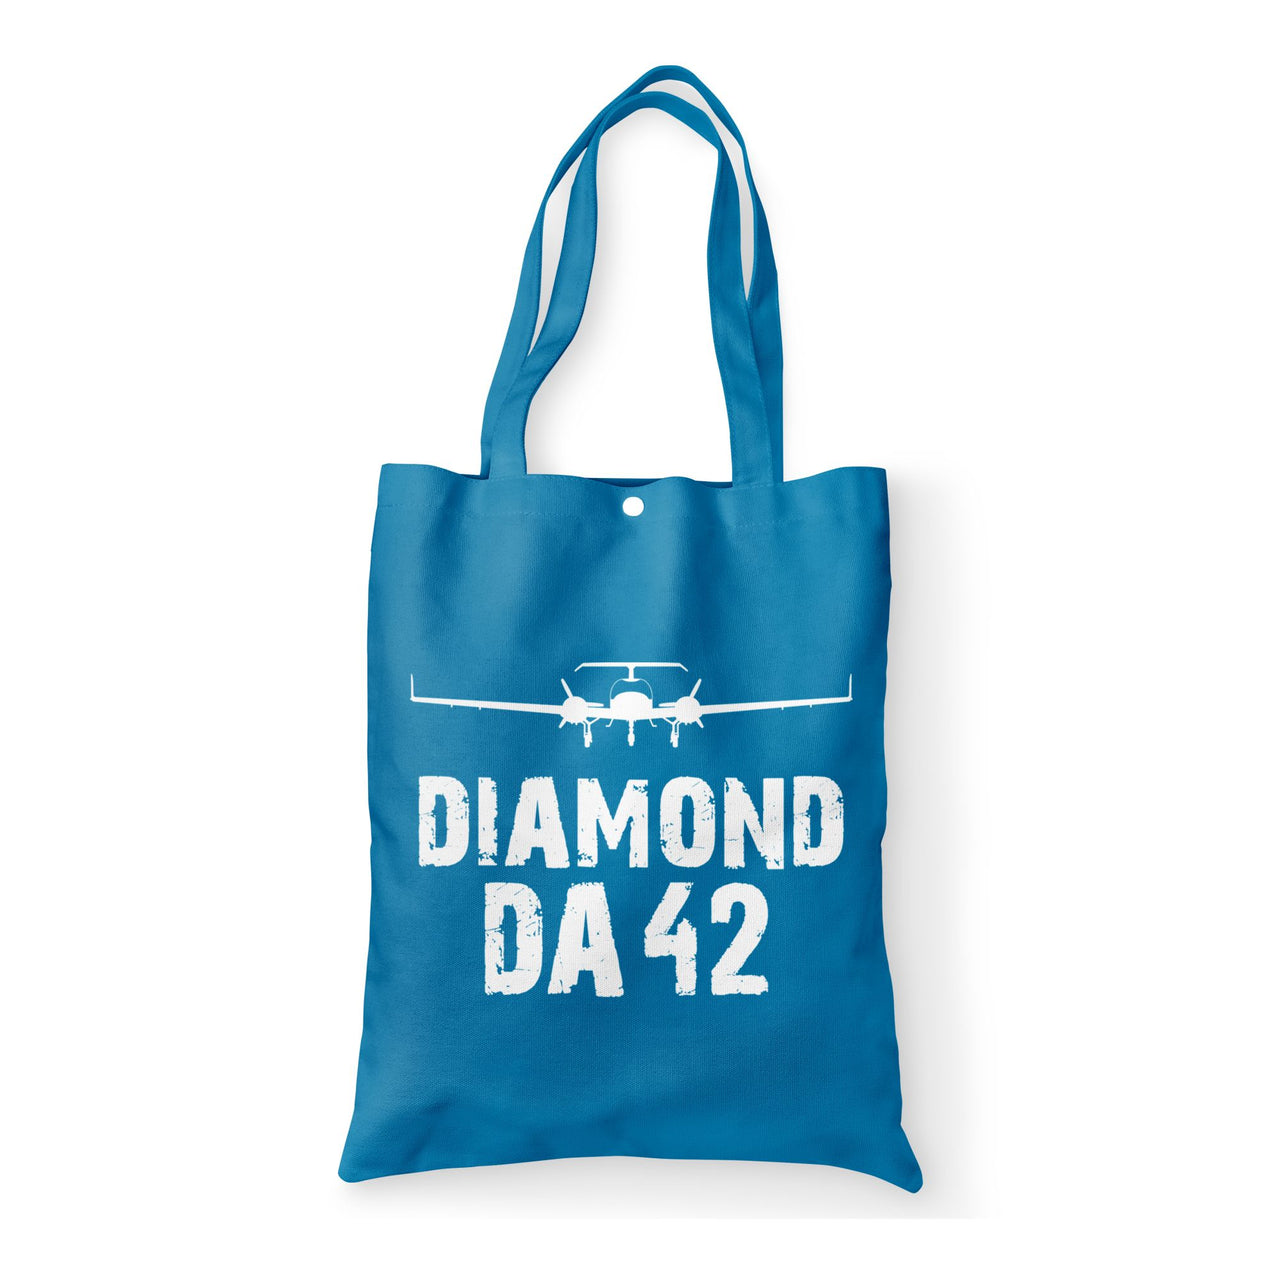 Diamond DA42 & Plane Designed Tote Bags